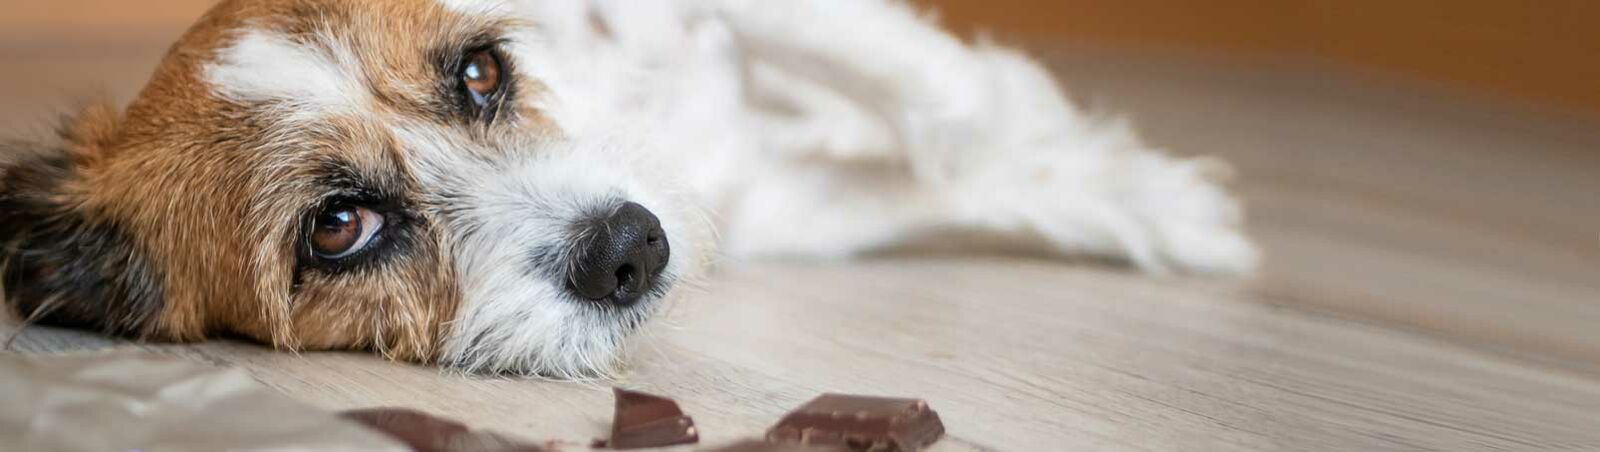 Darum darf Ihr Hund keine Schokolade fressen | RINTI